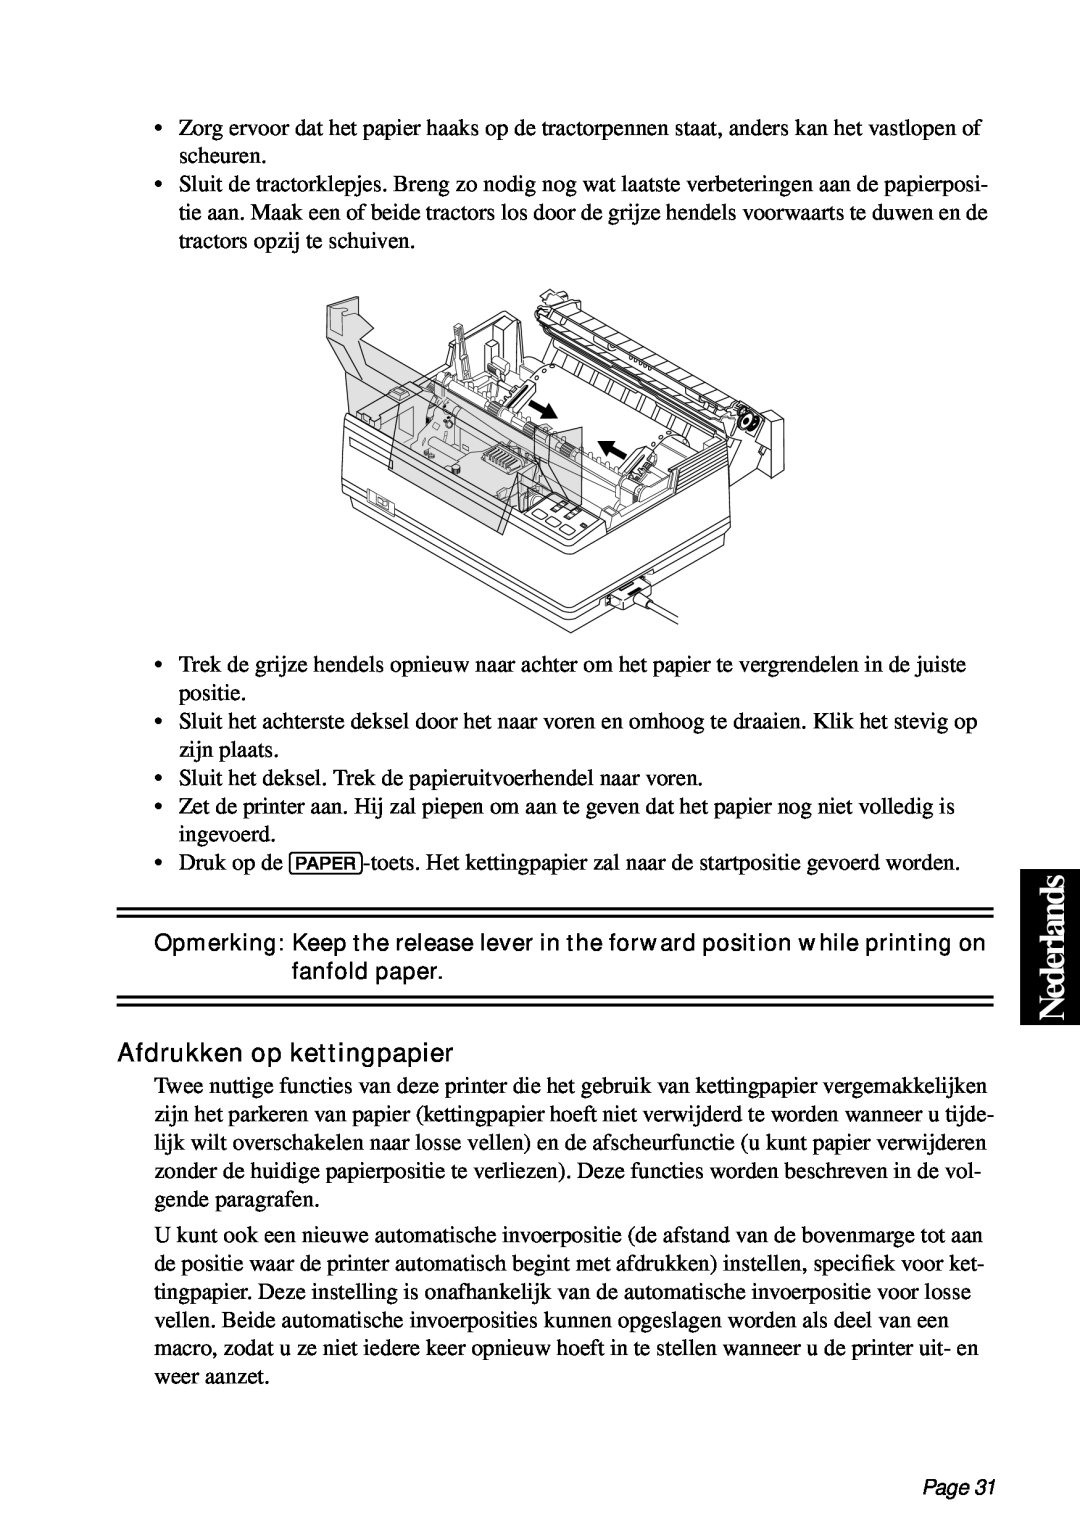 Star Micronics PT-10Q user manual Nederlands, Afdrukken op kettingpapier, Page 